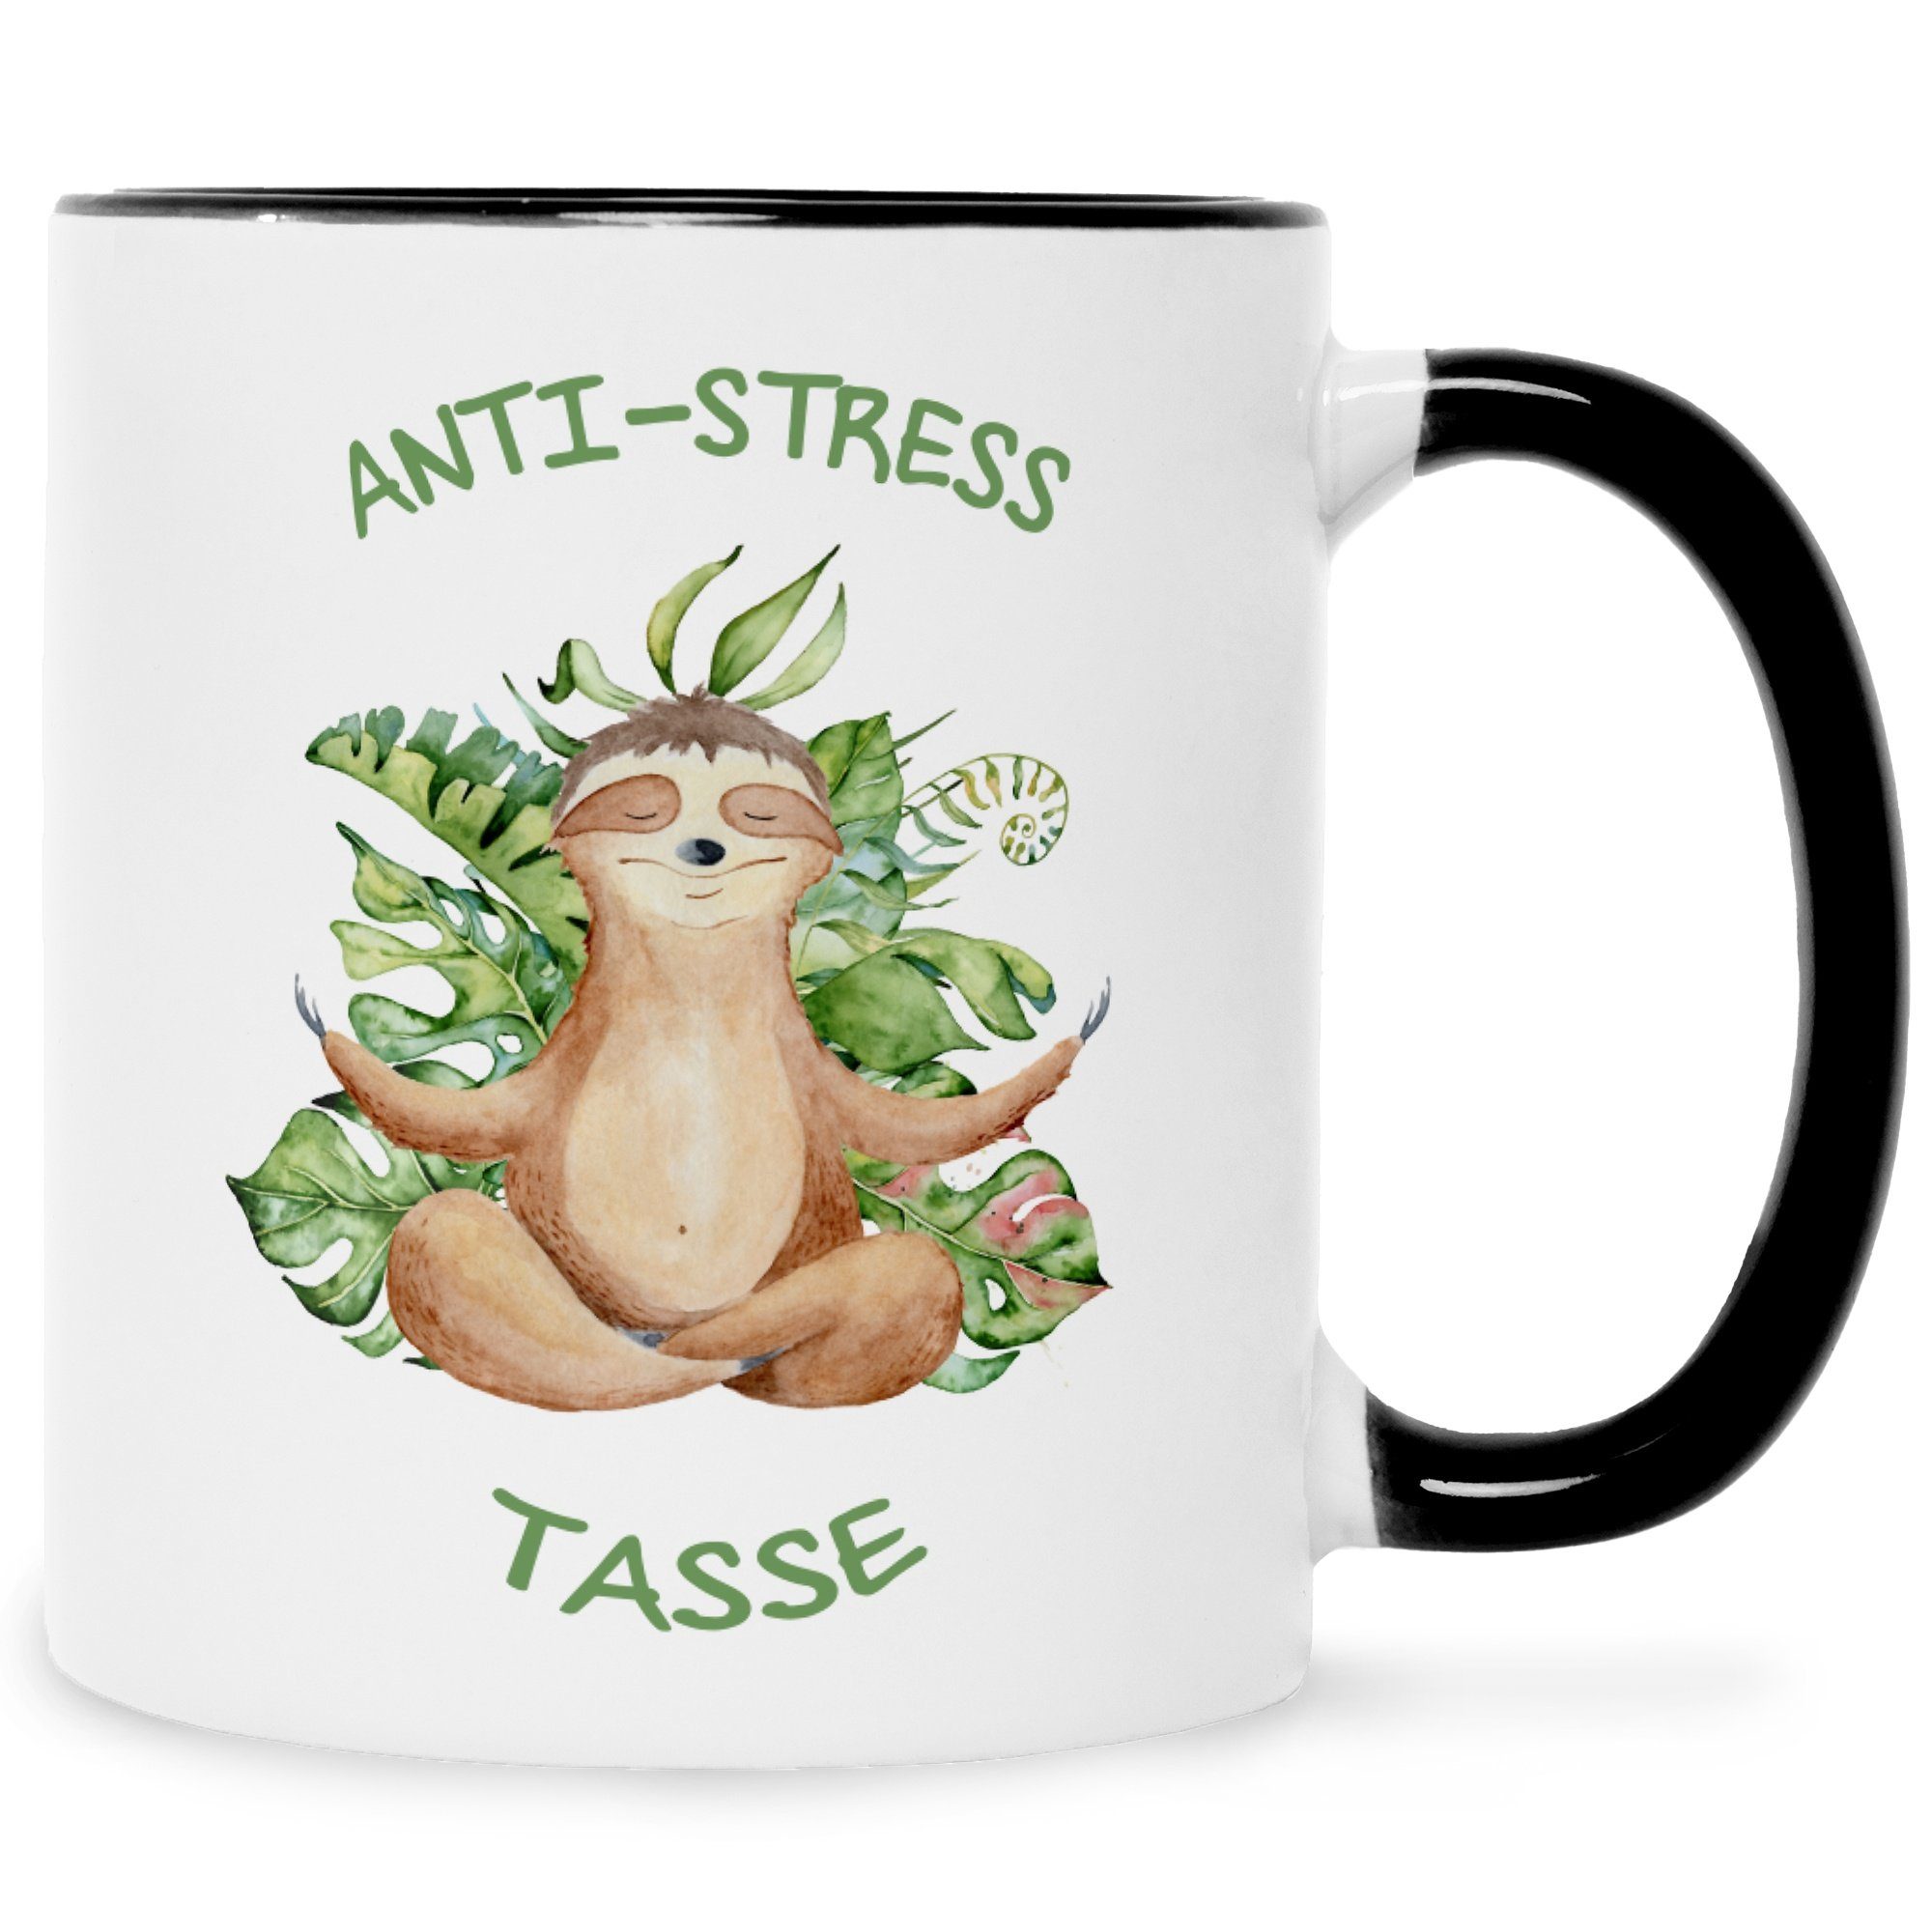 GRAVURZEILE Tasse mit Spruch Anti-Stress Tasse, Keramik, Farbe: Schwarz & Weiß